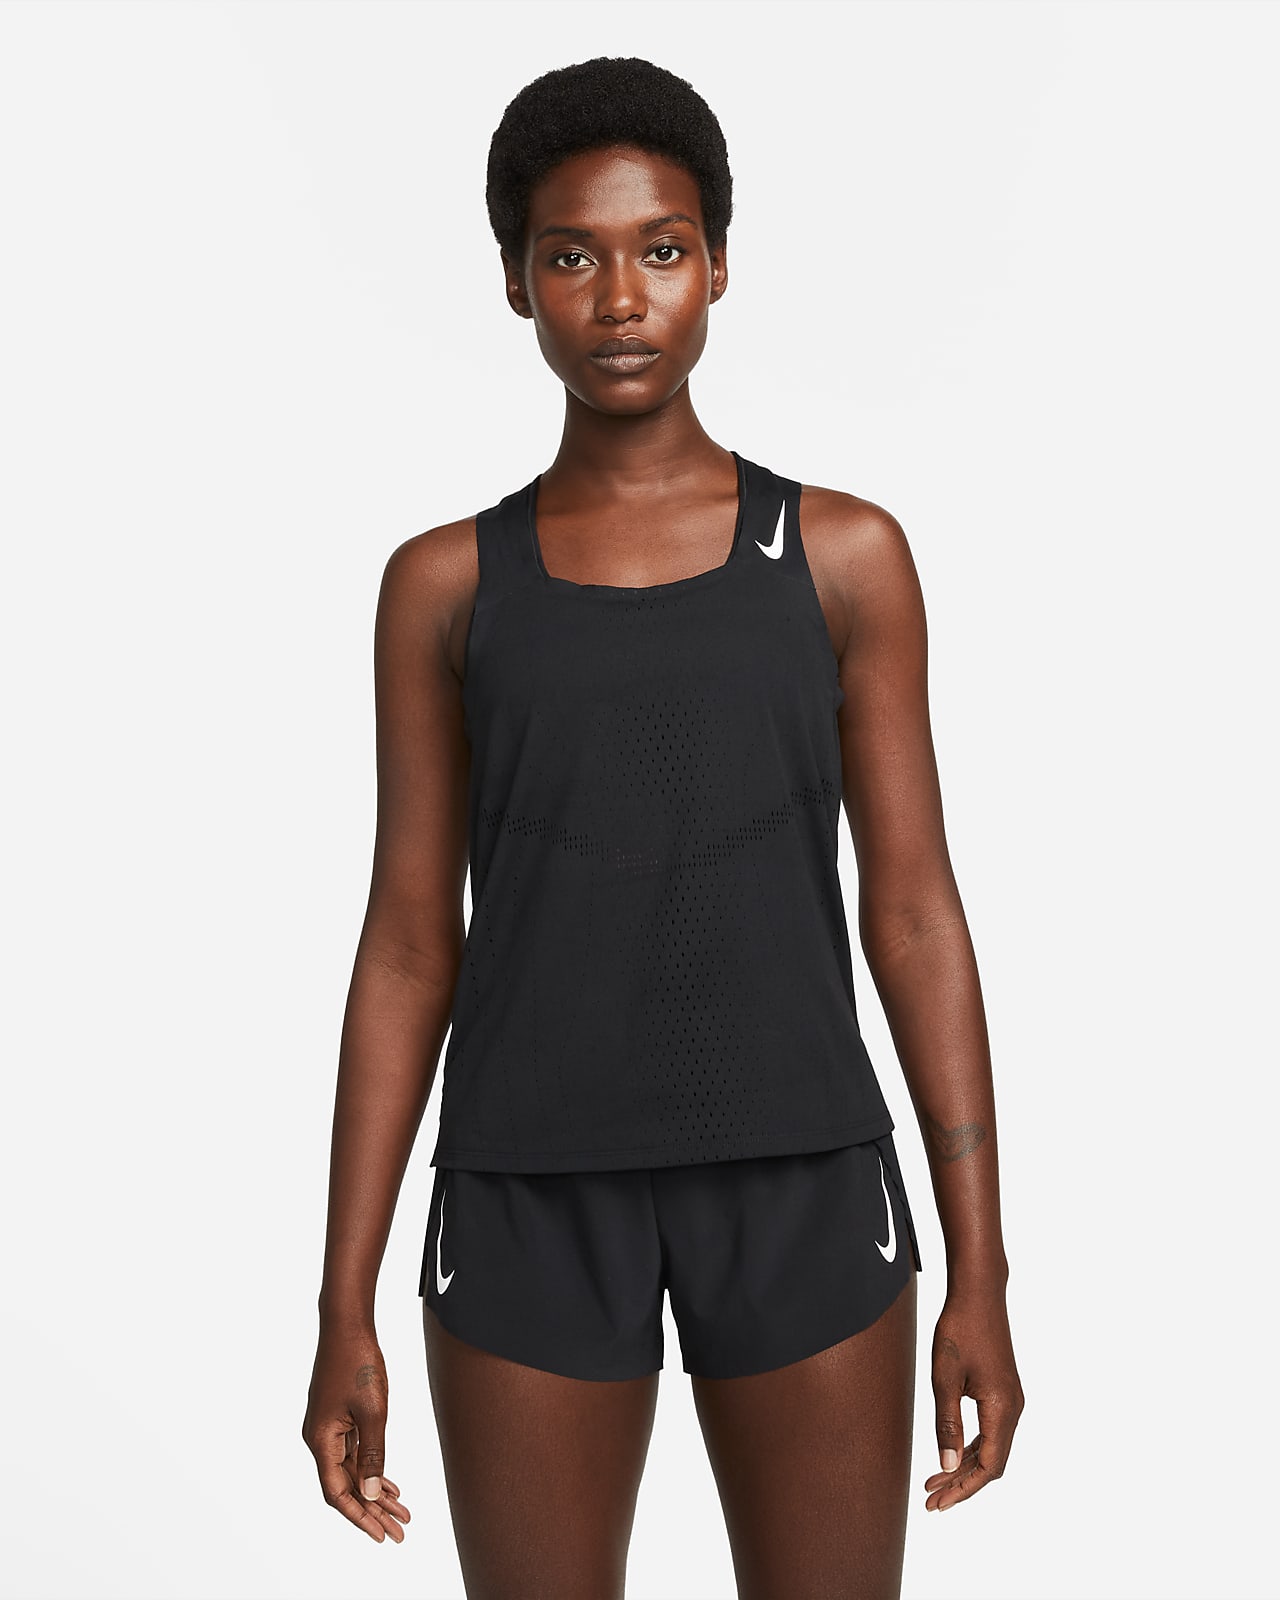 NIKE Womens Sz Small Black Dri-fit ADV Tight Fit Engineered Running Bodysuit